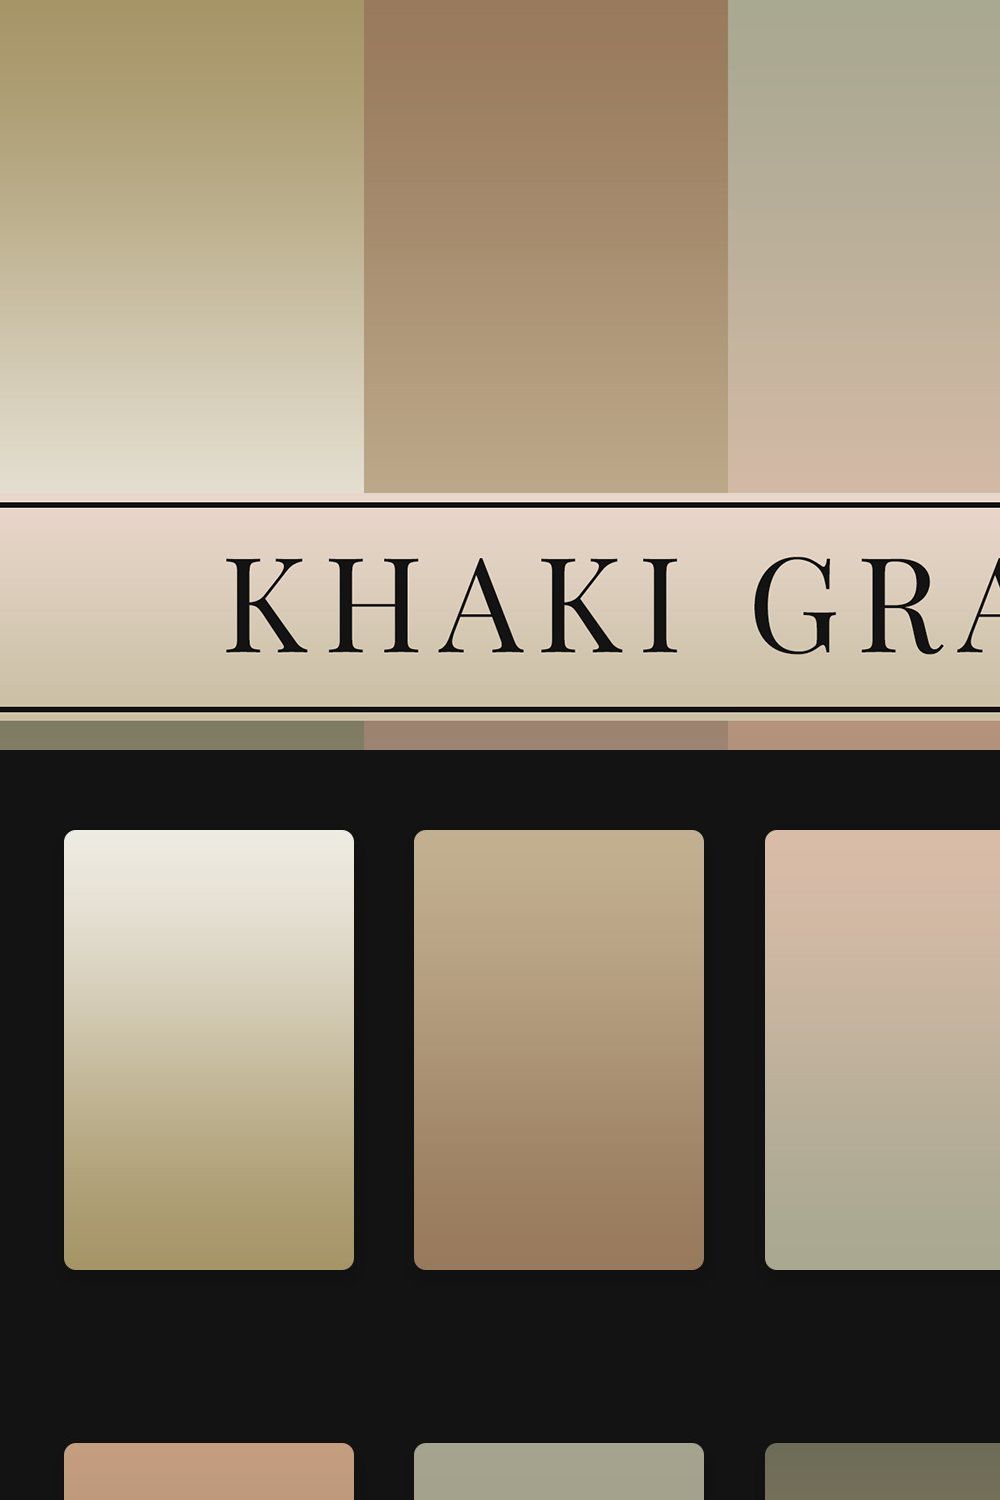 Khaki Gradients pinterest preview image.